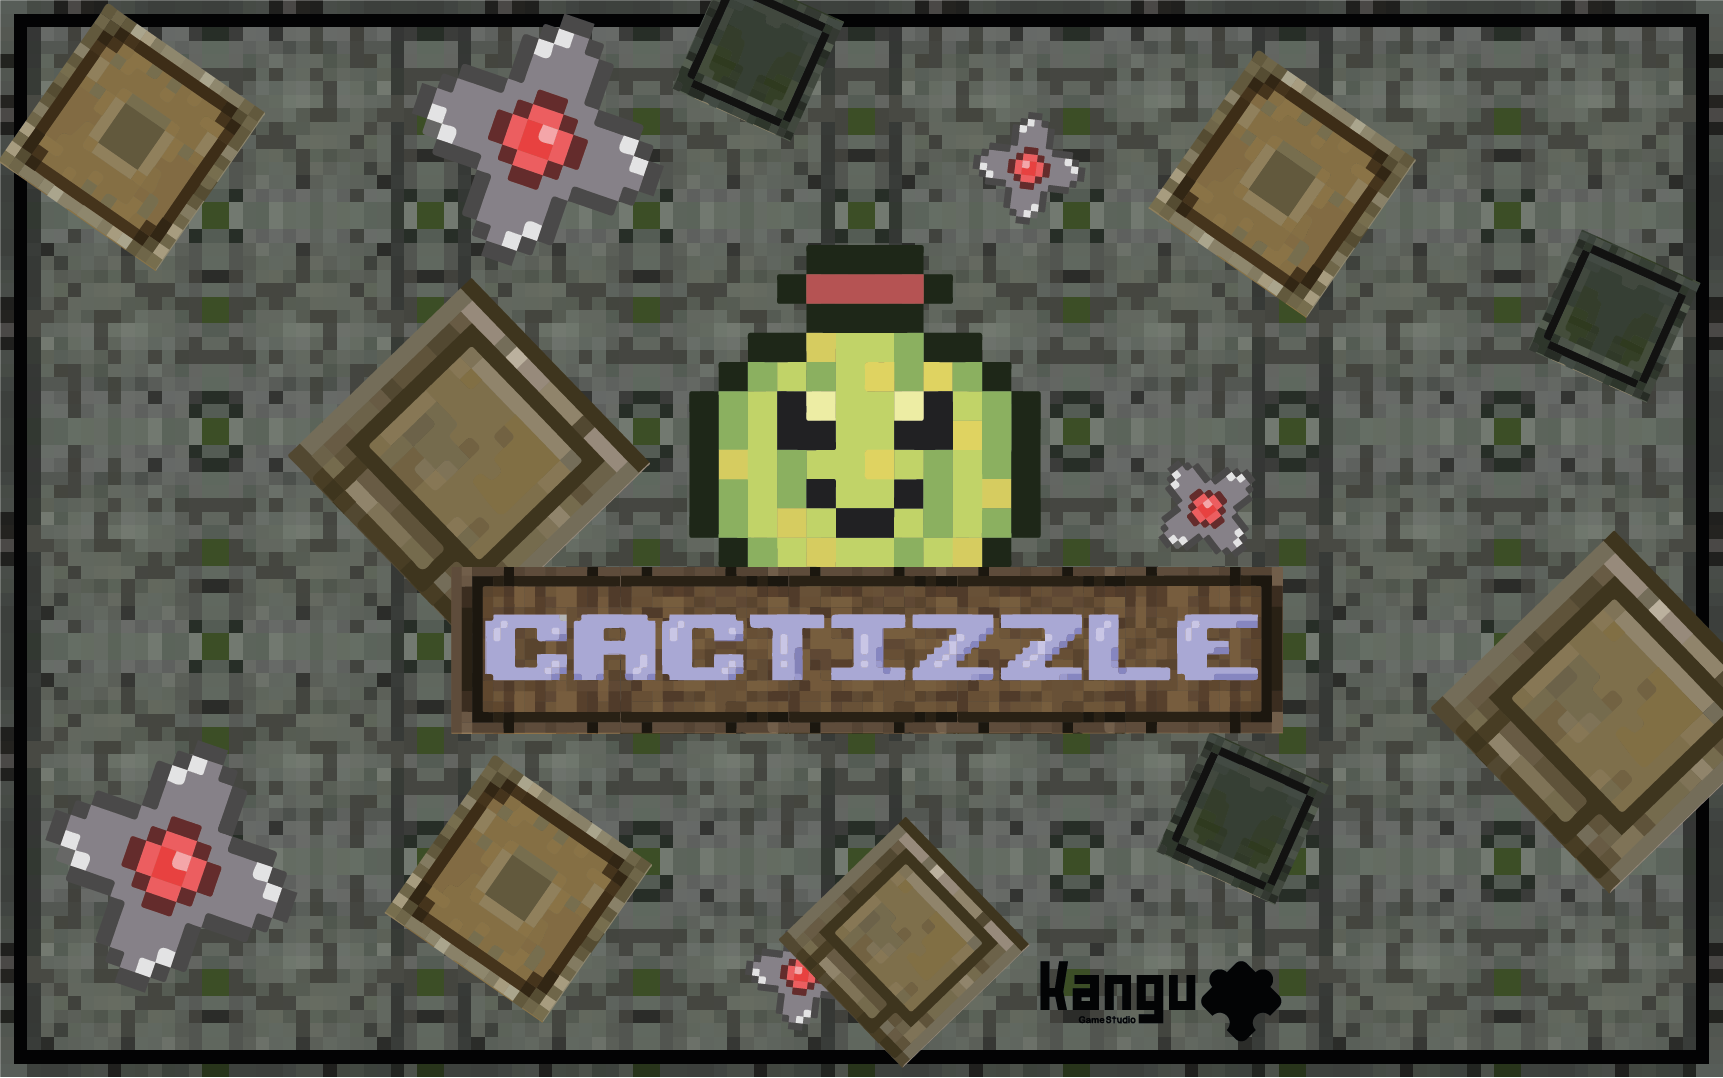 Cactizzle